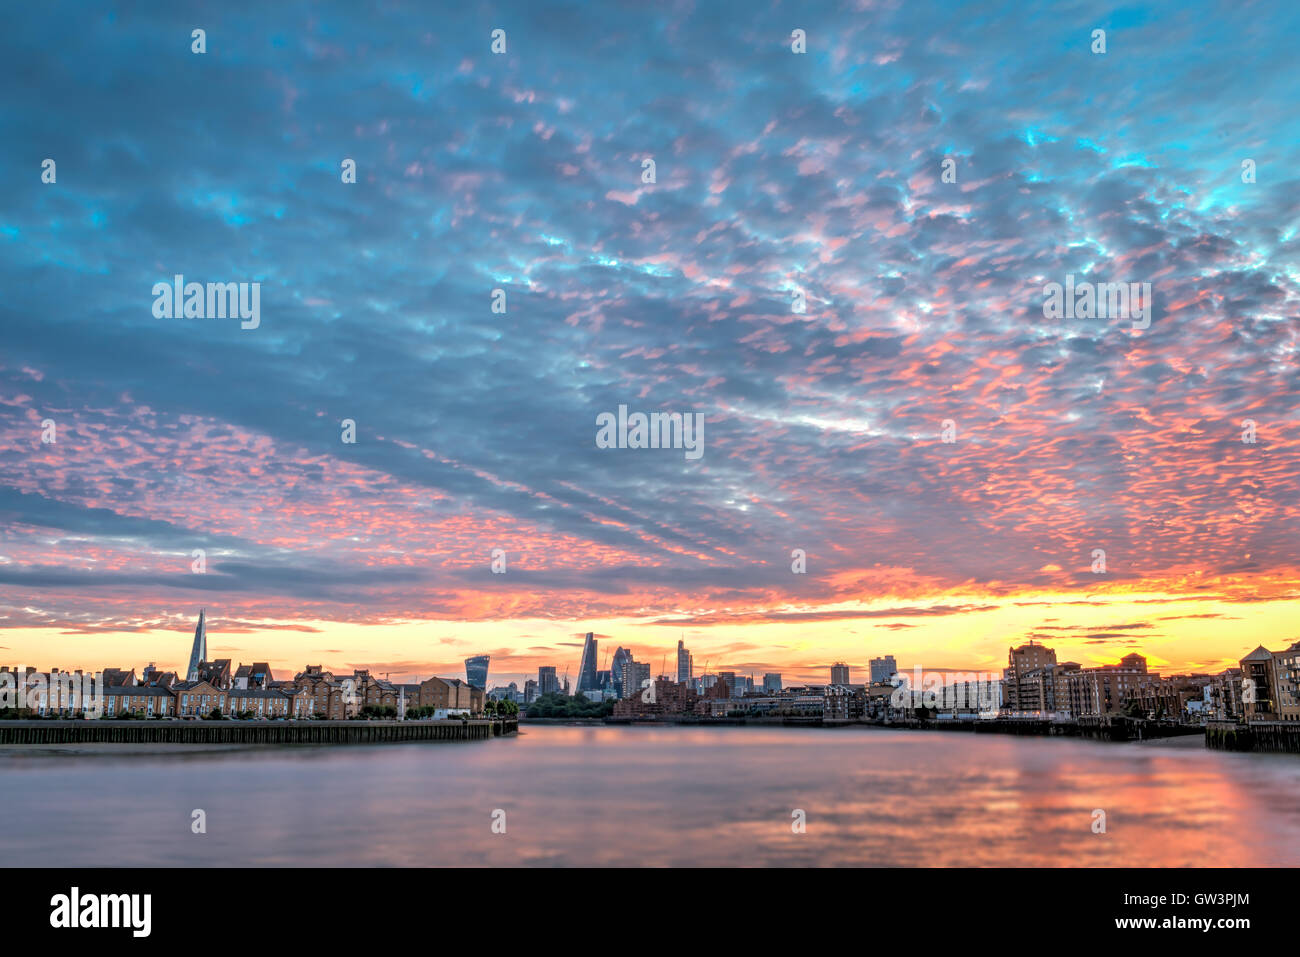 Londres, Royaume-Uni - 23 juillet 2016 : Coucher de soleil sur l'horizon de Londres, avec London City et Shard, vue de Canary Wharf Banque D'Images